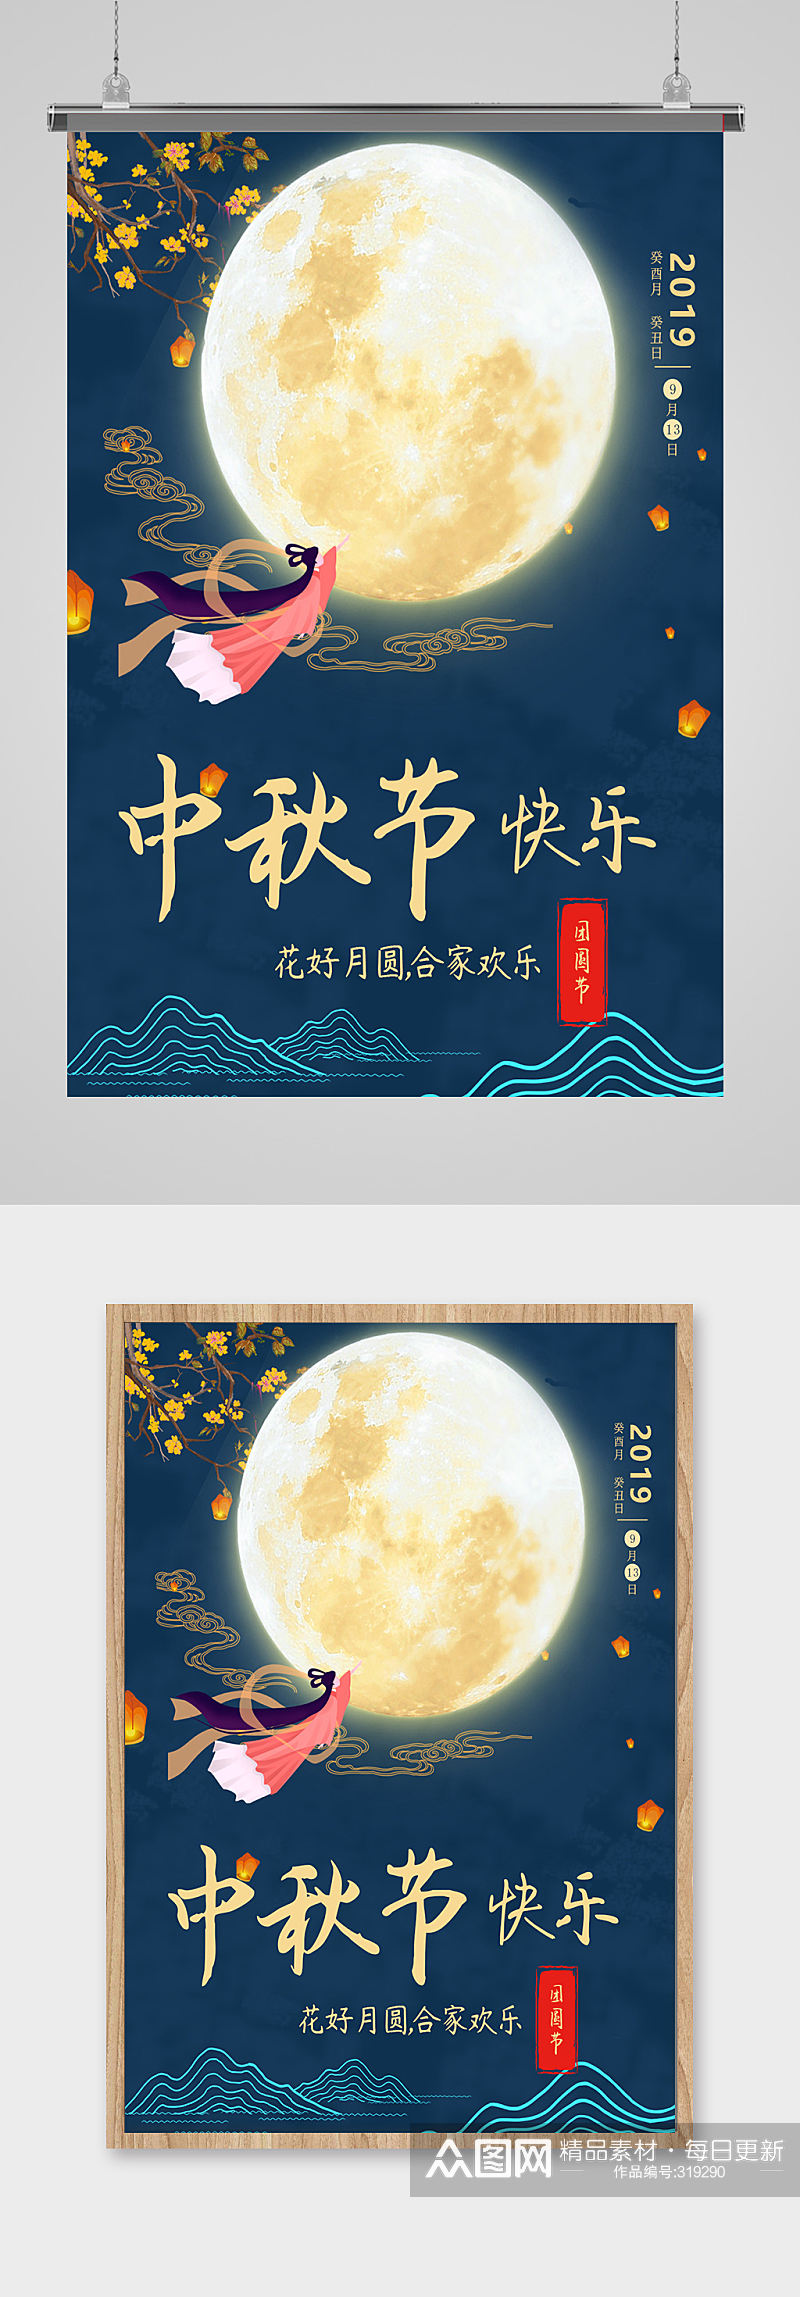 中国风中秋海报设计素材